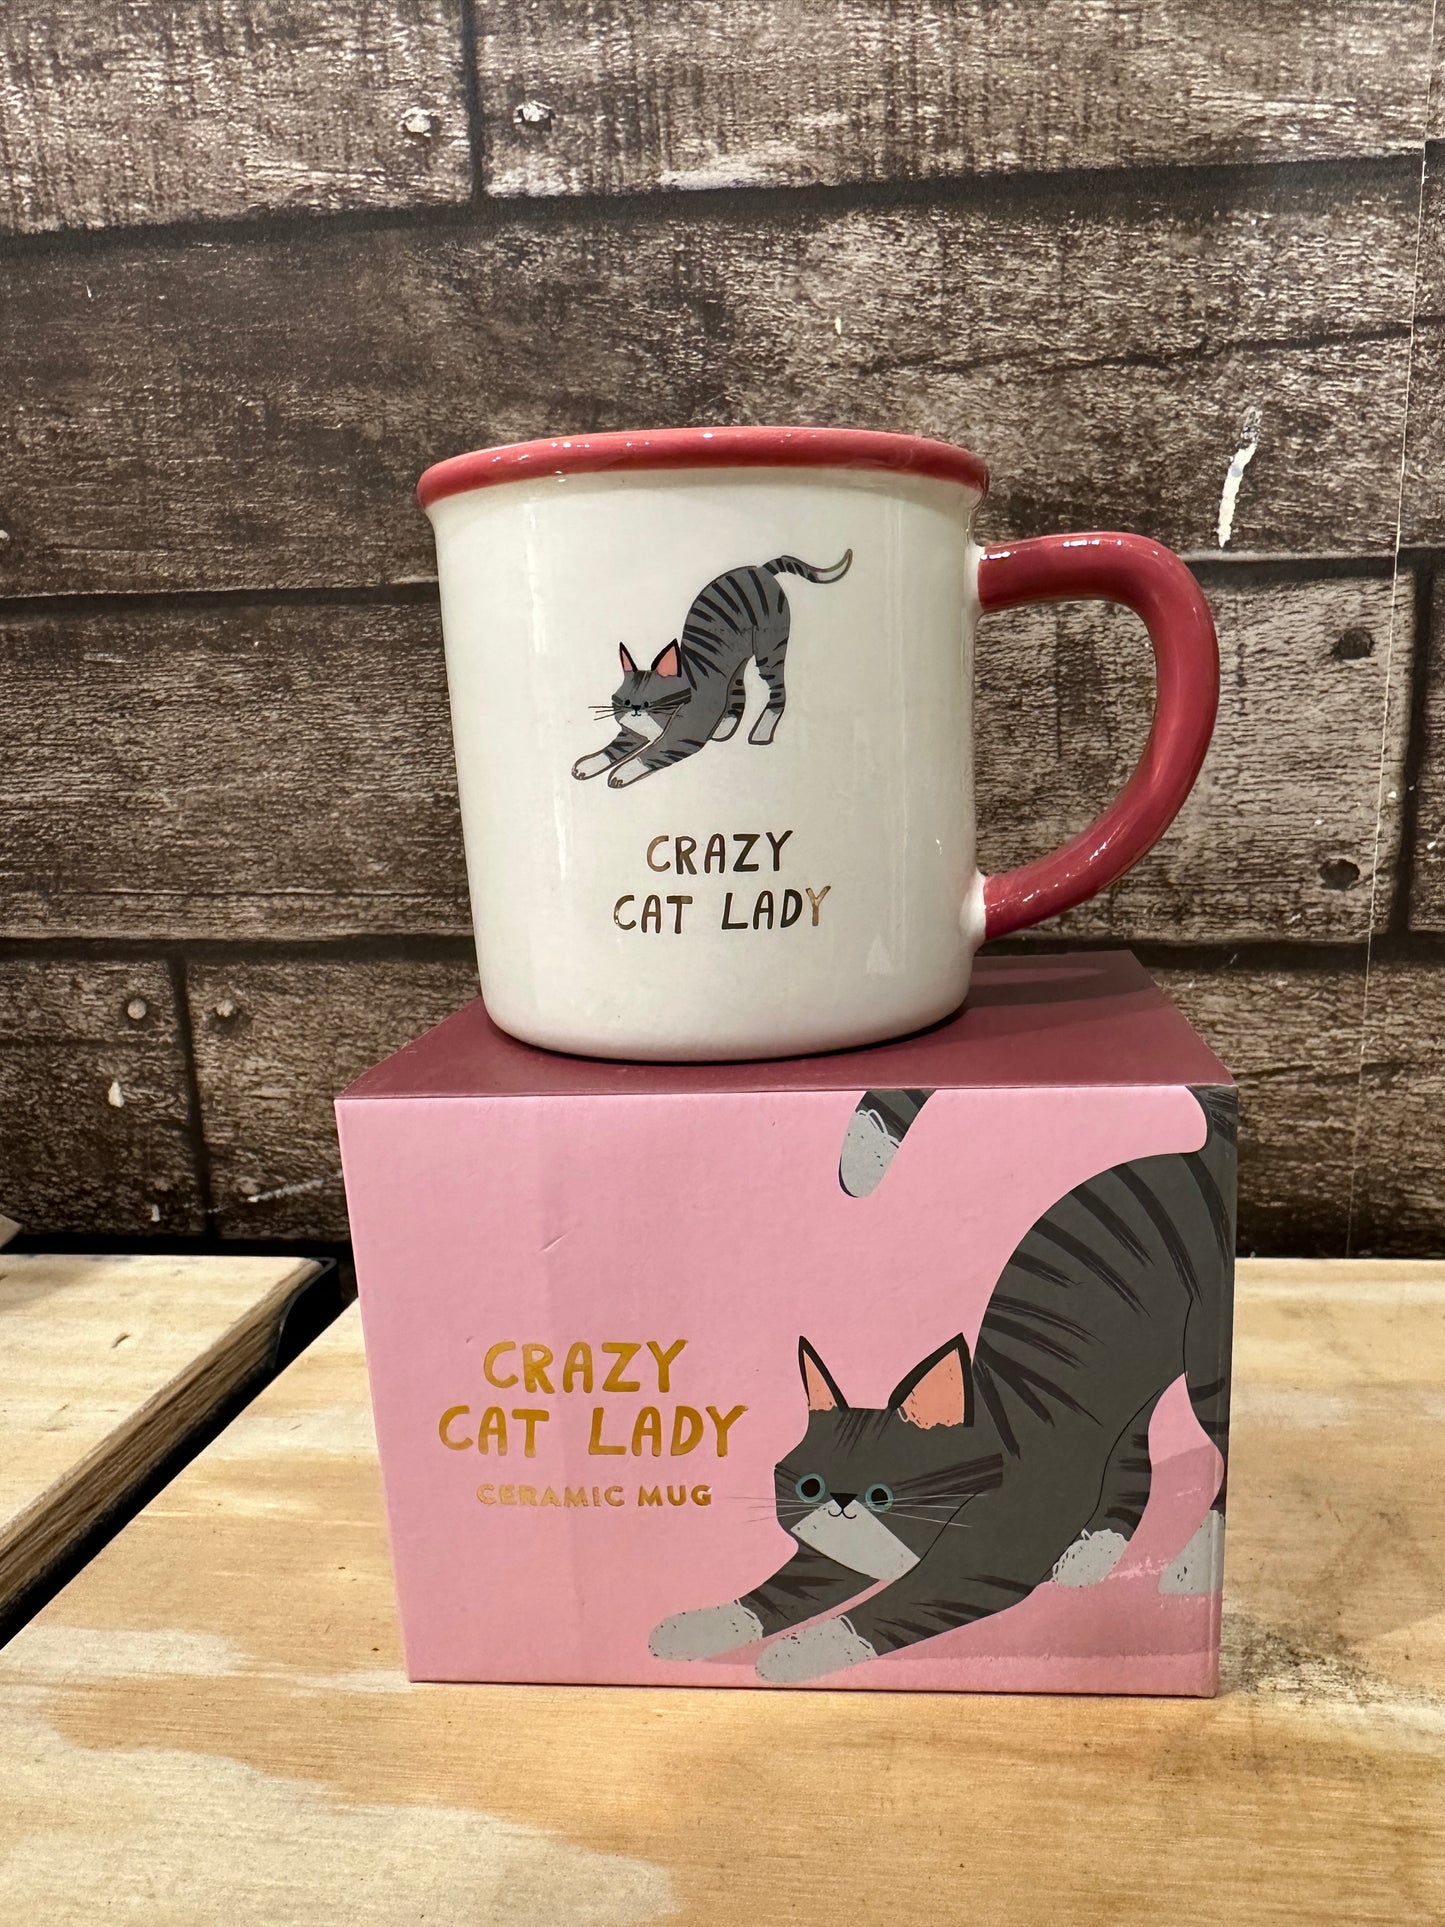 Cool Cat 'Crazy Cat Lady' Ceramic Mug in Gift Box